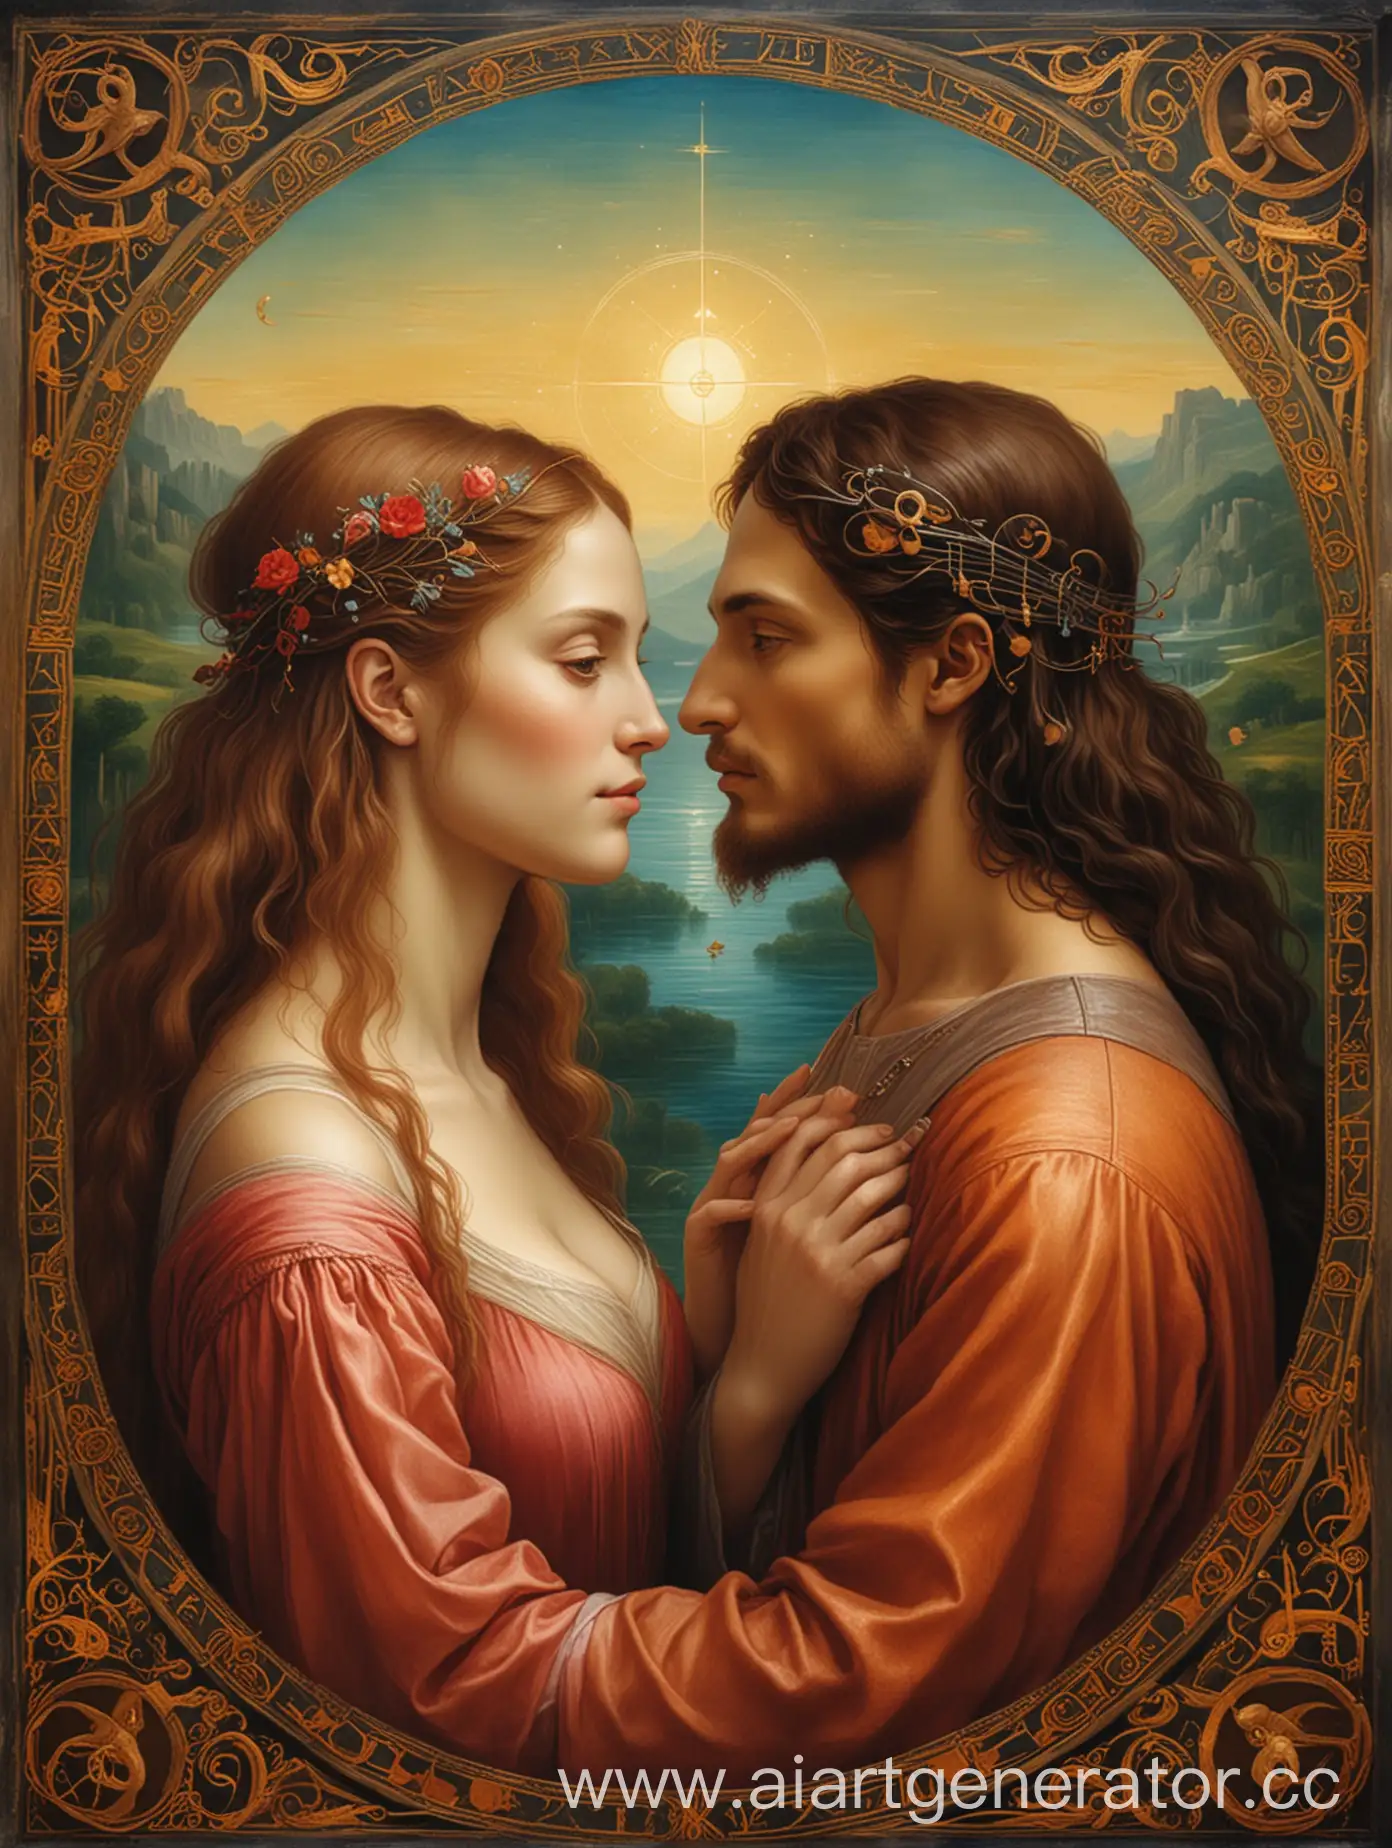 Leonardo da vinci oil painting style, futuristic, spiritual, AI future business, Tarot : the Lovers 